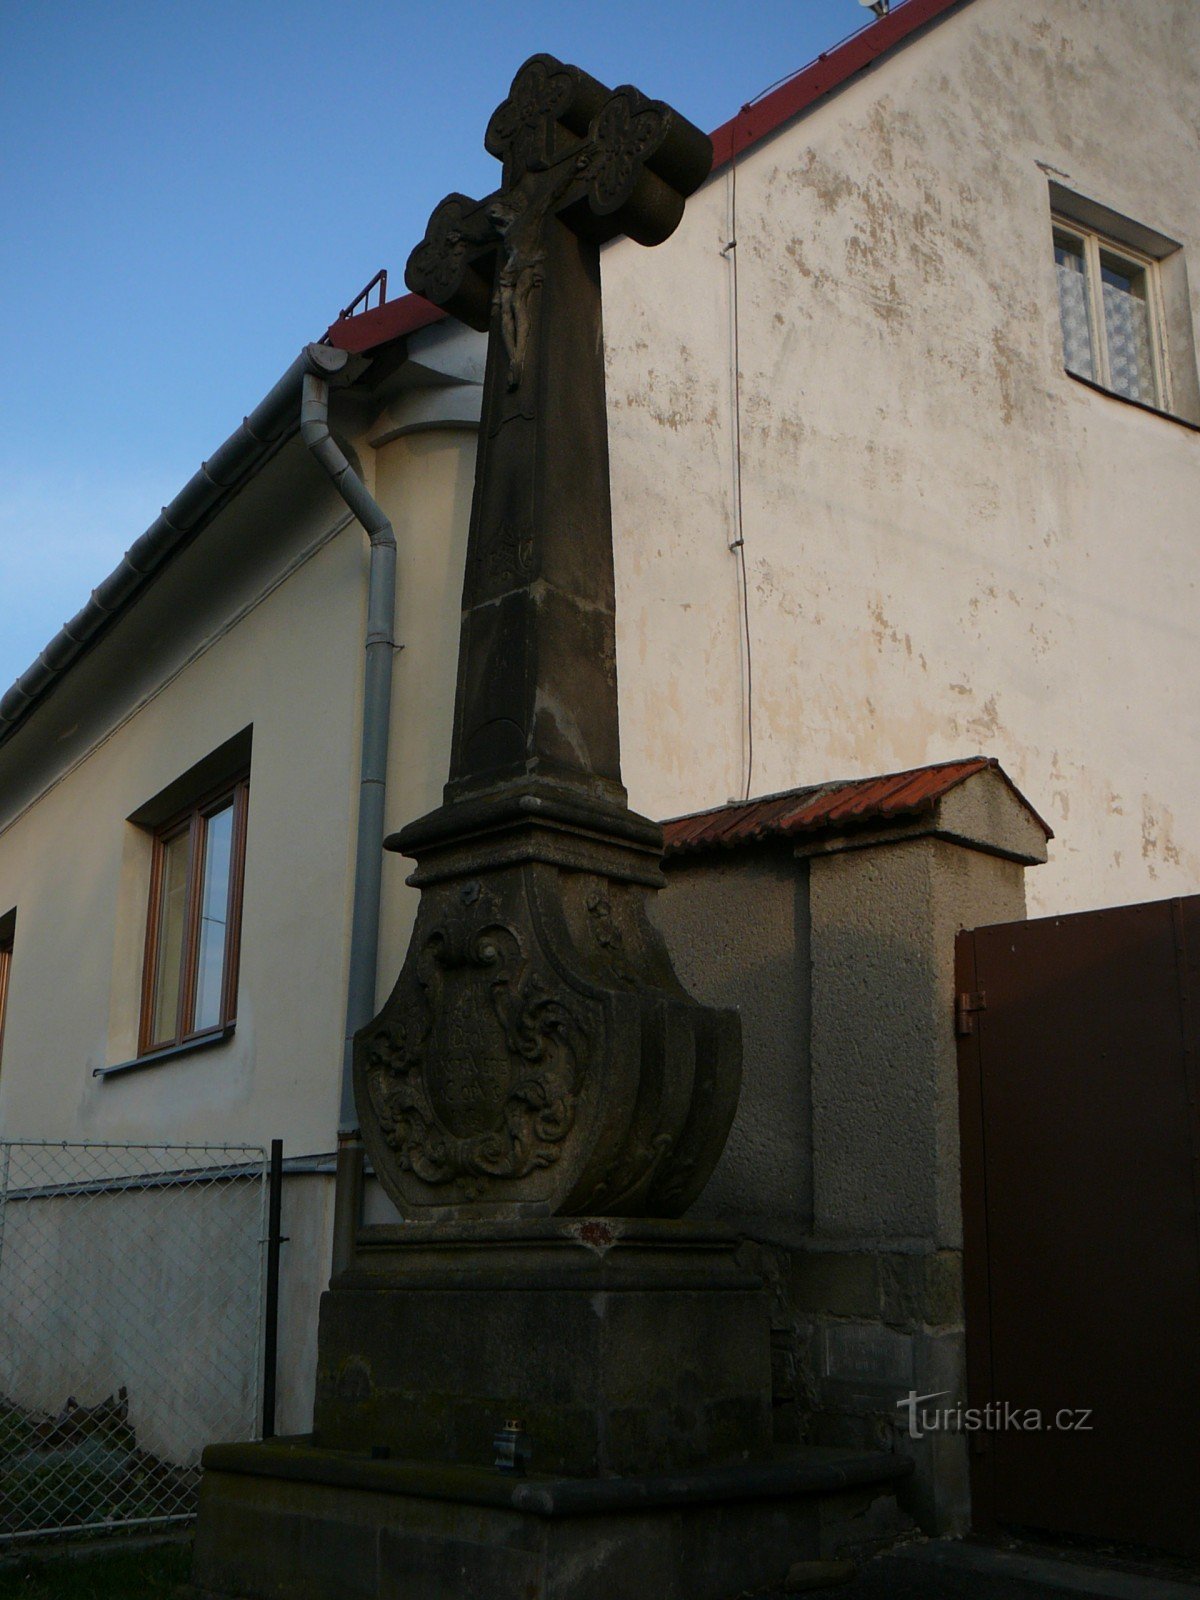 băng qua trước nhà thờ ở Palkovice, Hukvaldský